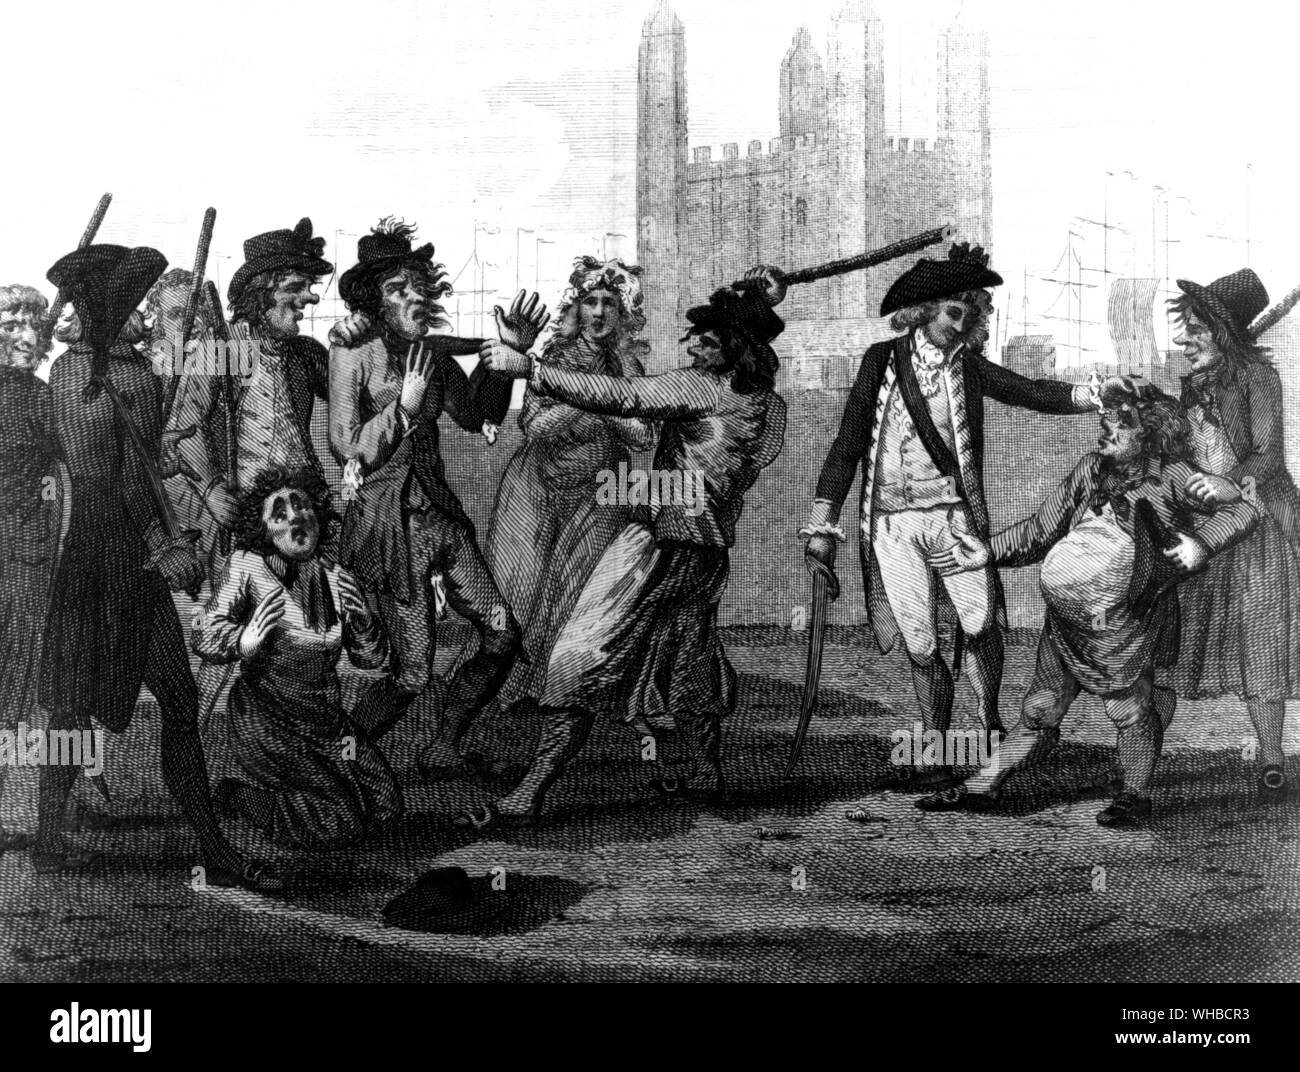 Manning la Marina 1790 - crítica de la práctica de pressganging Foto de stock